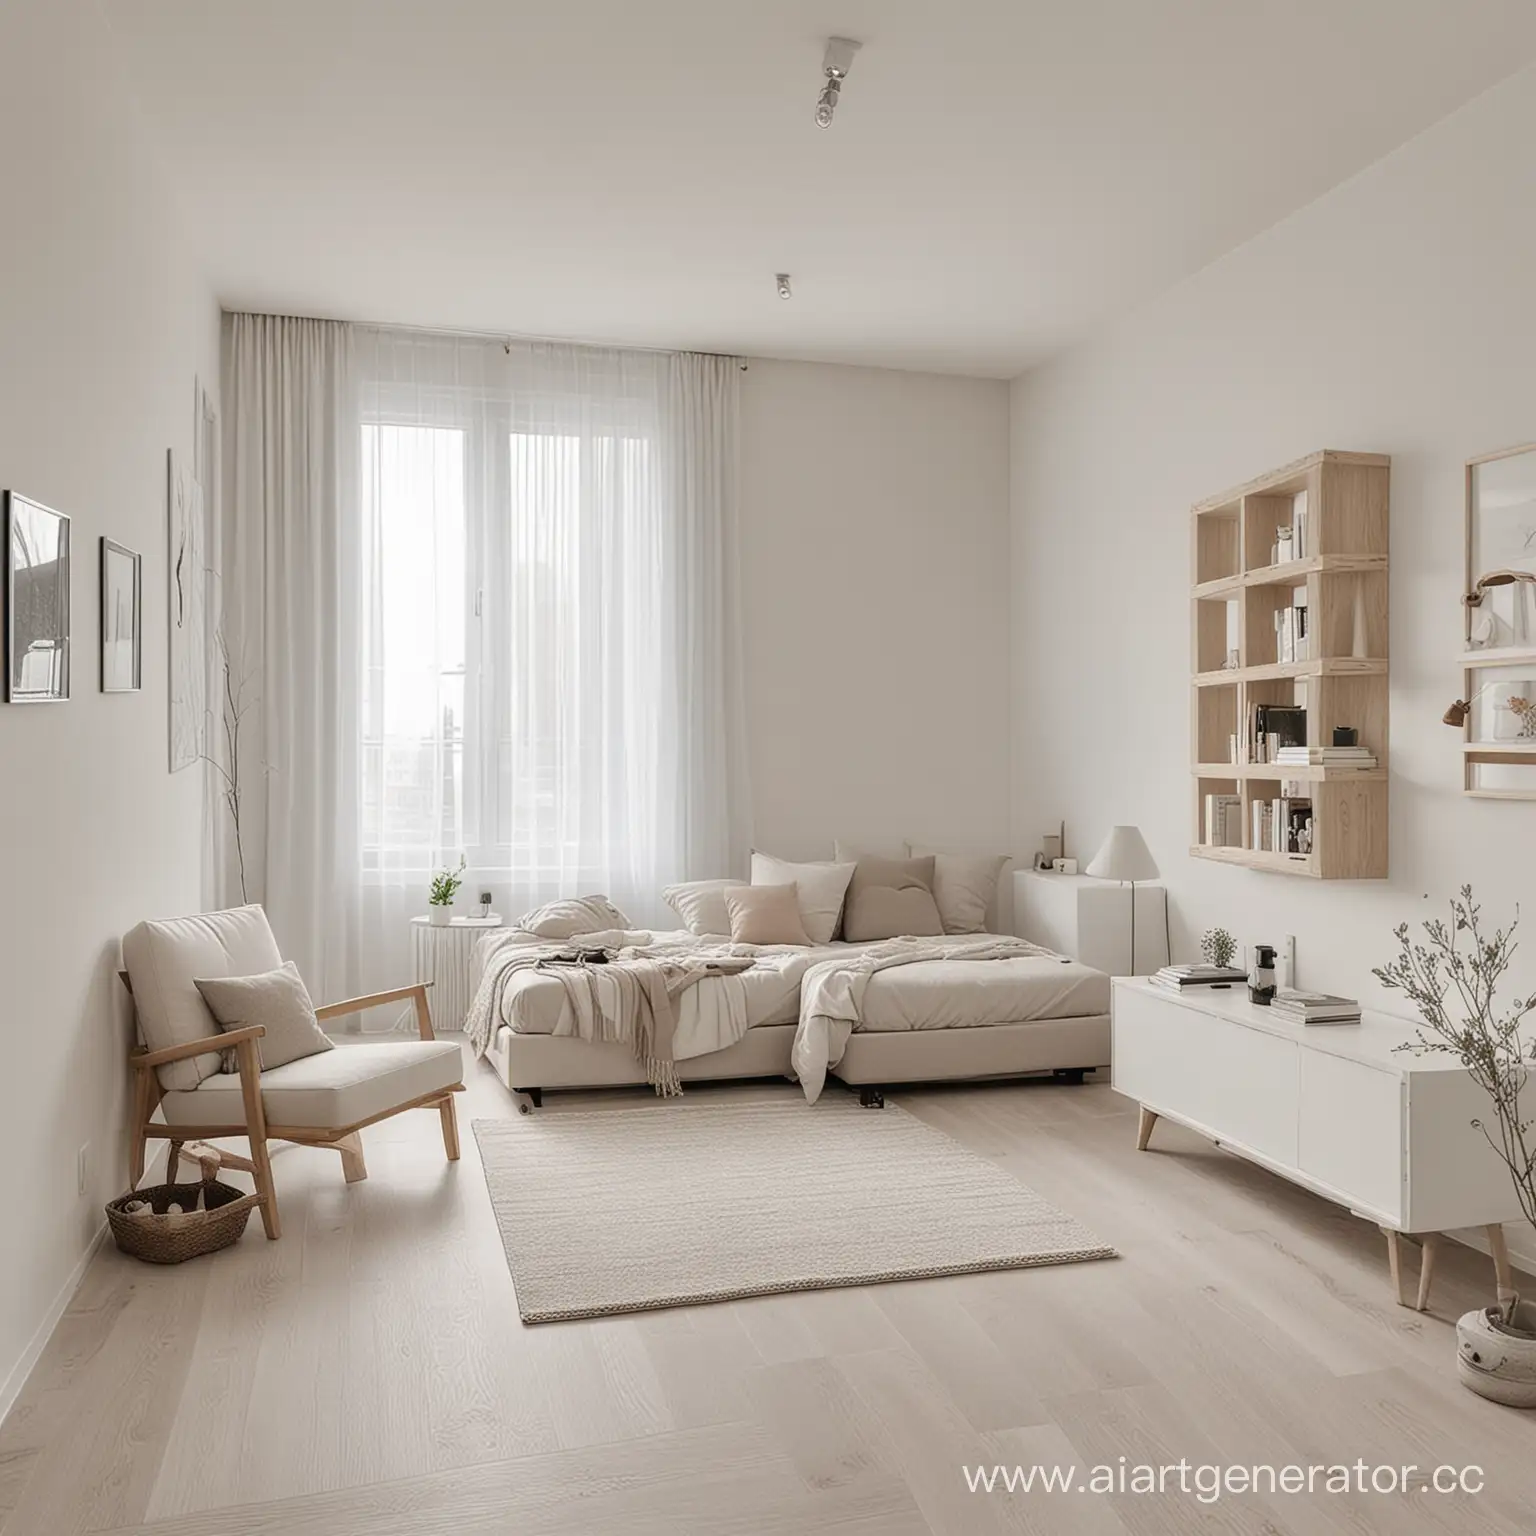 комната минималистичная в квартире в светлых тонах с небольшим декором